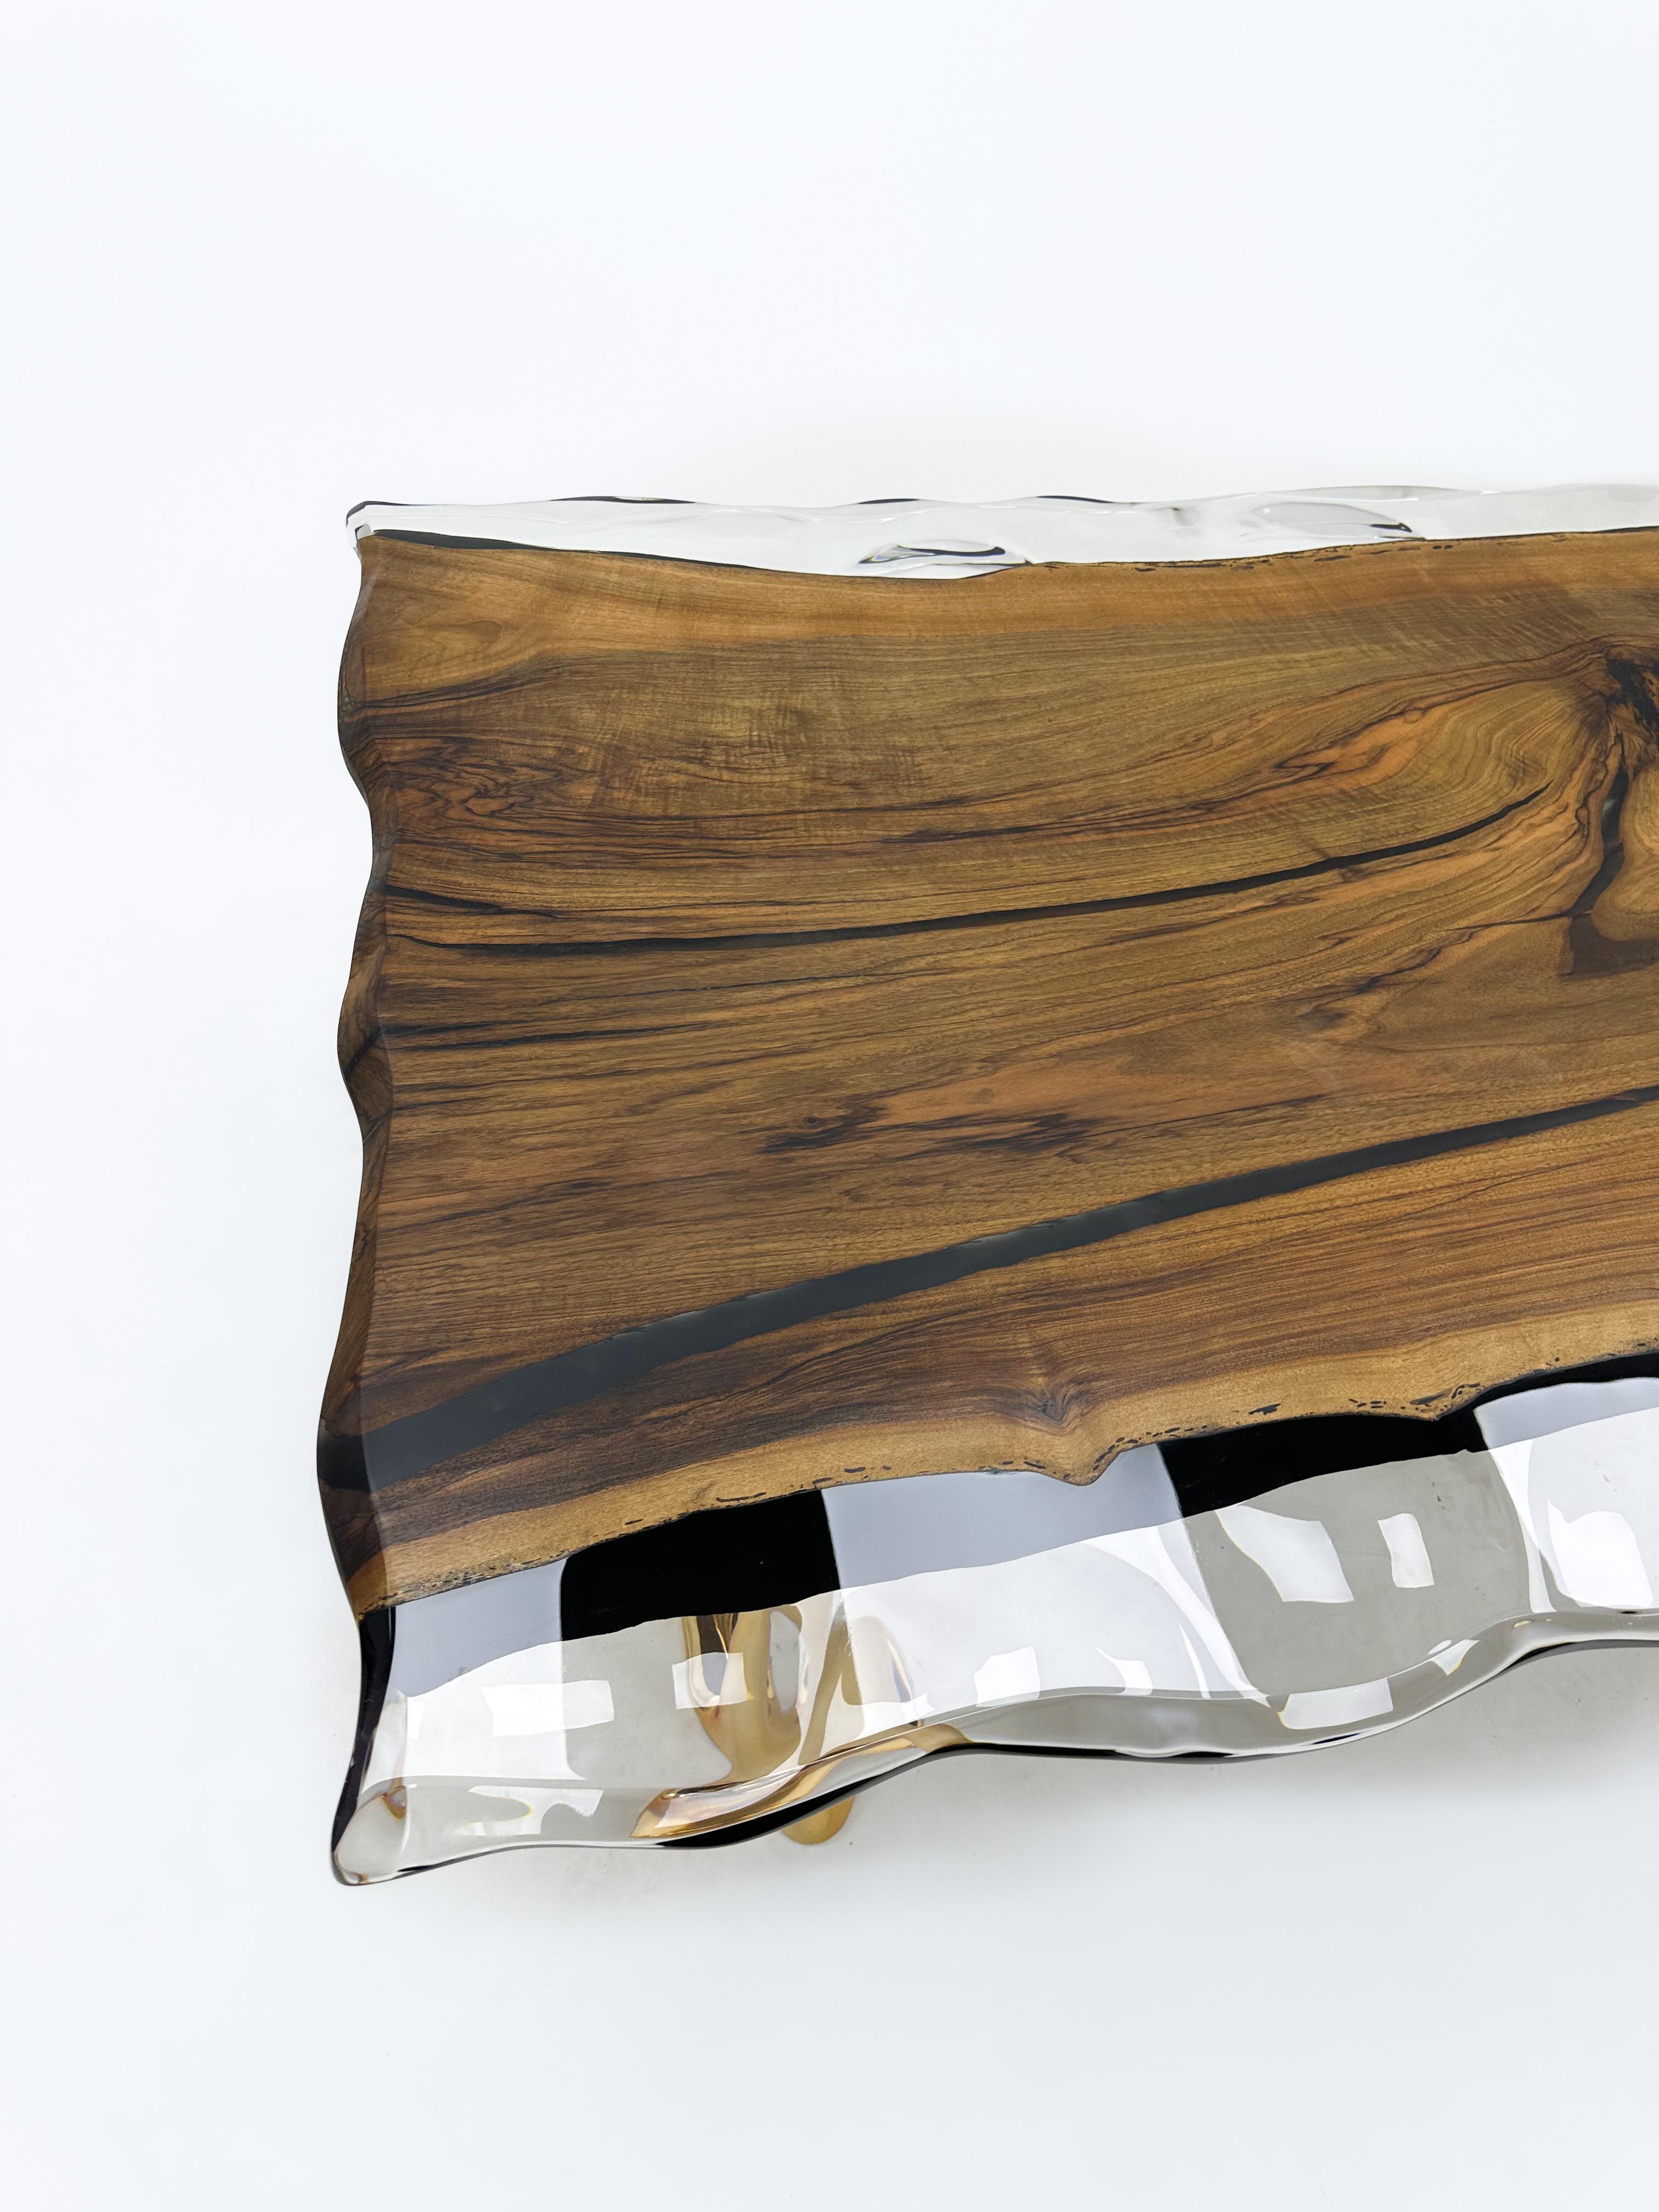 Klarer Tisch aus Epoxidharz 

Individuelle Größen und Farben sind erhältlich!

Dieser Tisch ist aus Walnussholz gefertigt, das aufgrund seines einzigartigen Charakters ausgewählt wurde. Das Besondere daran ist das klare Epoxidharz, das das Holz mit